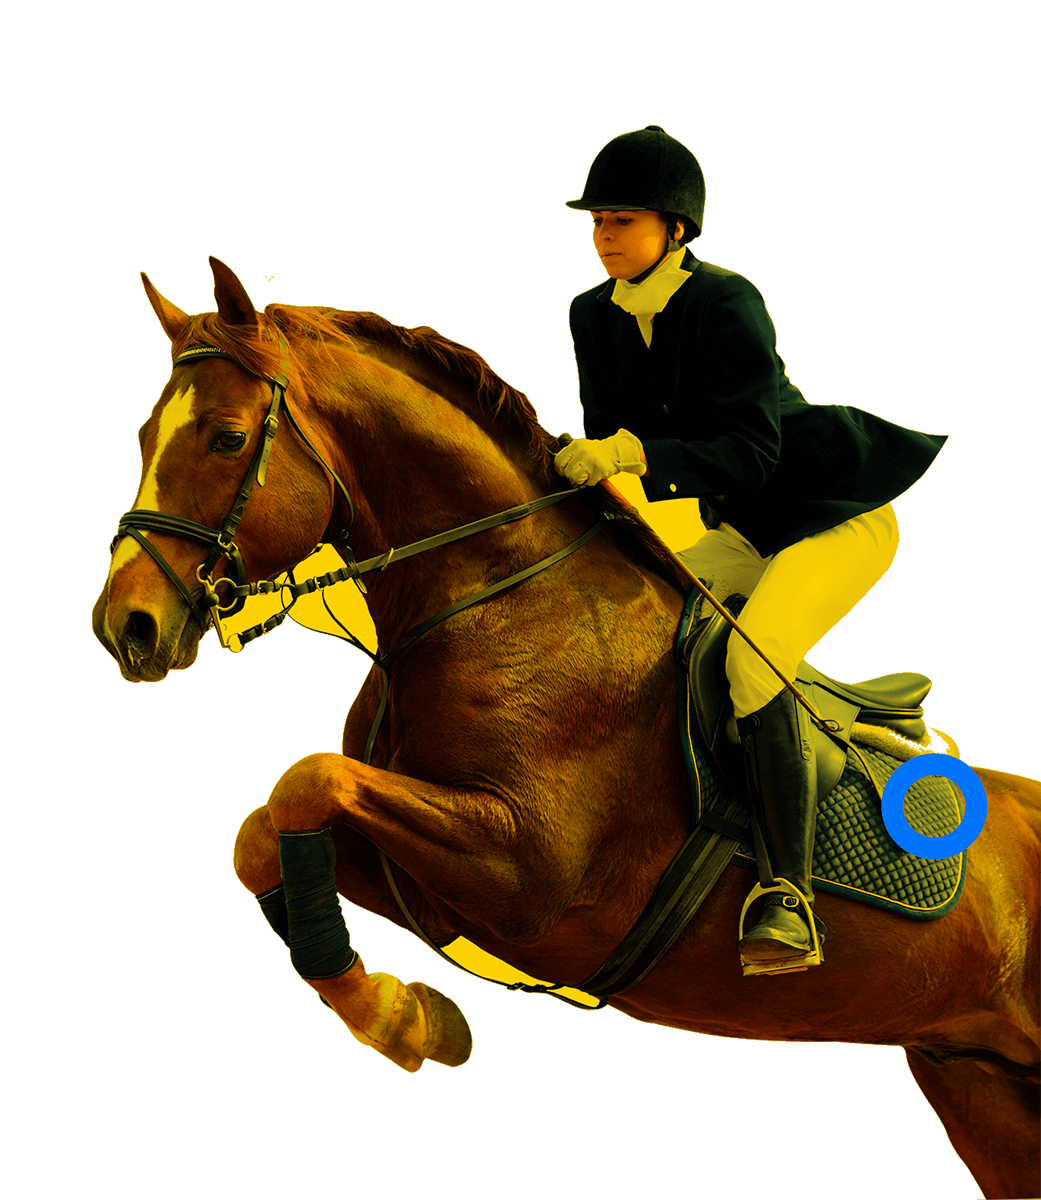 En la foto, una jienete saltando junto a su caballo.